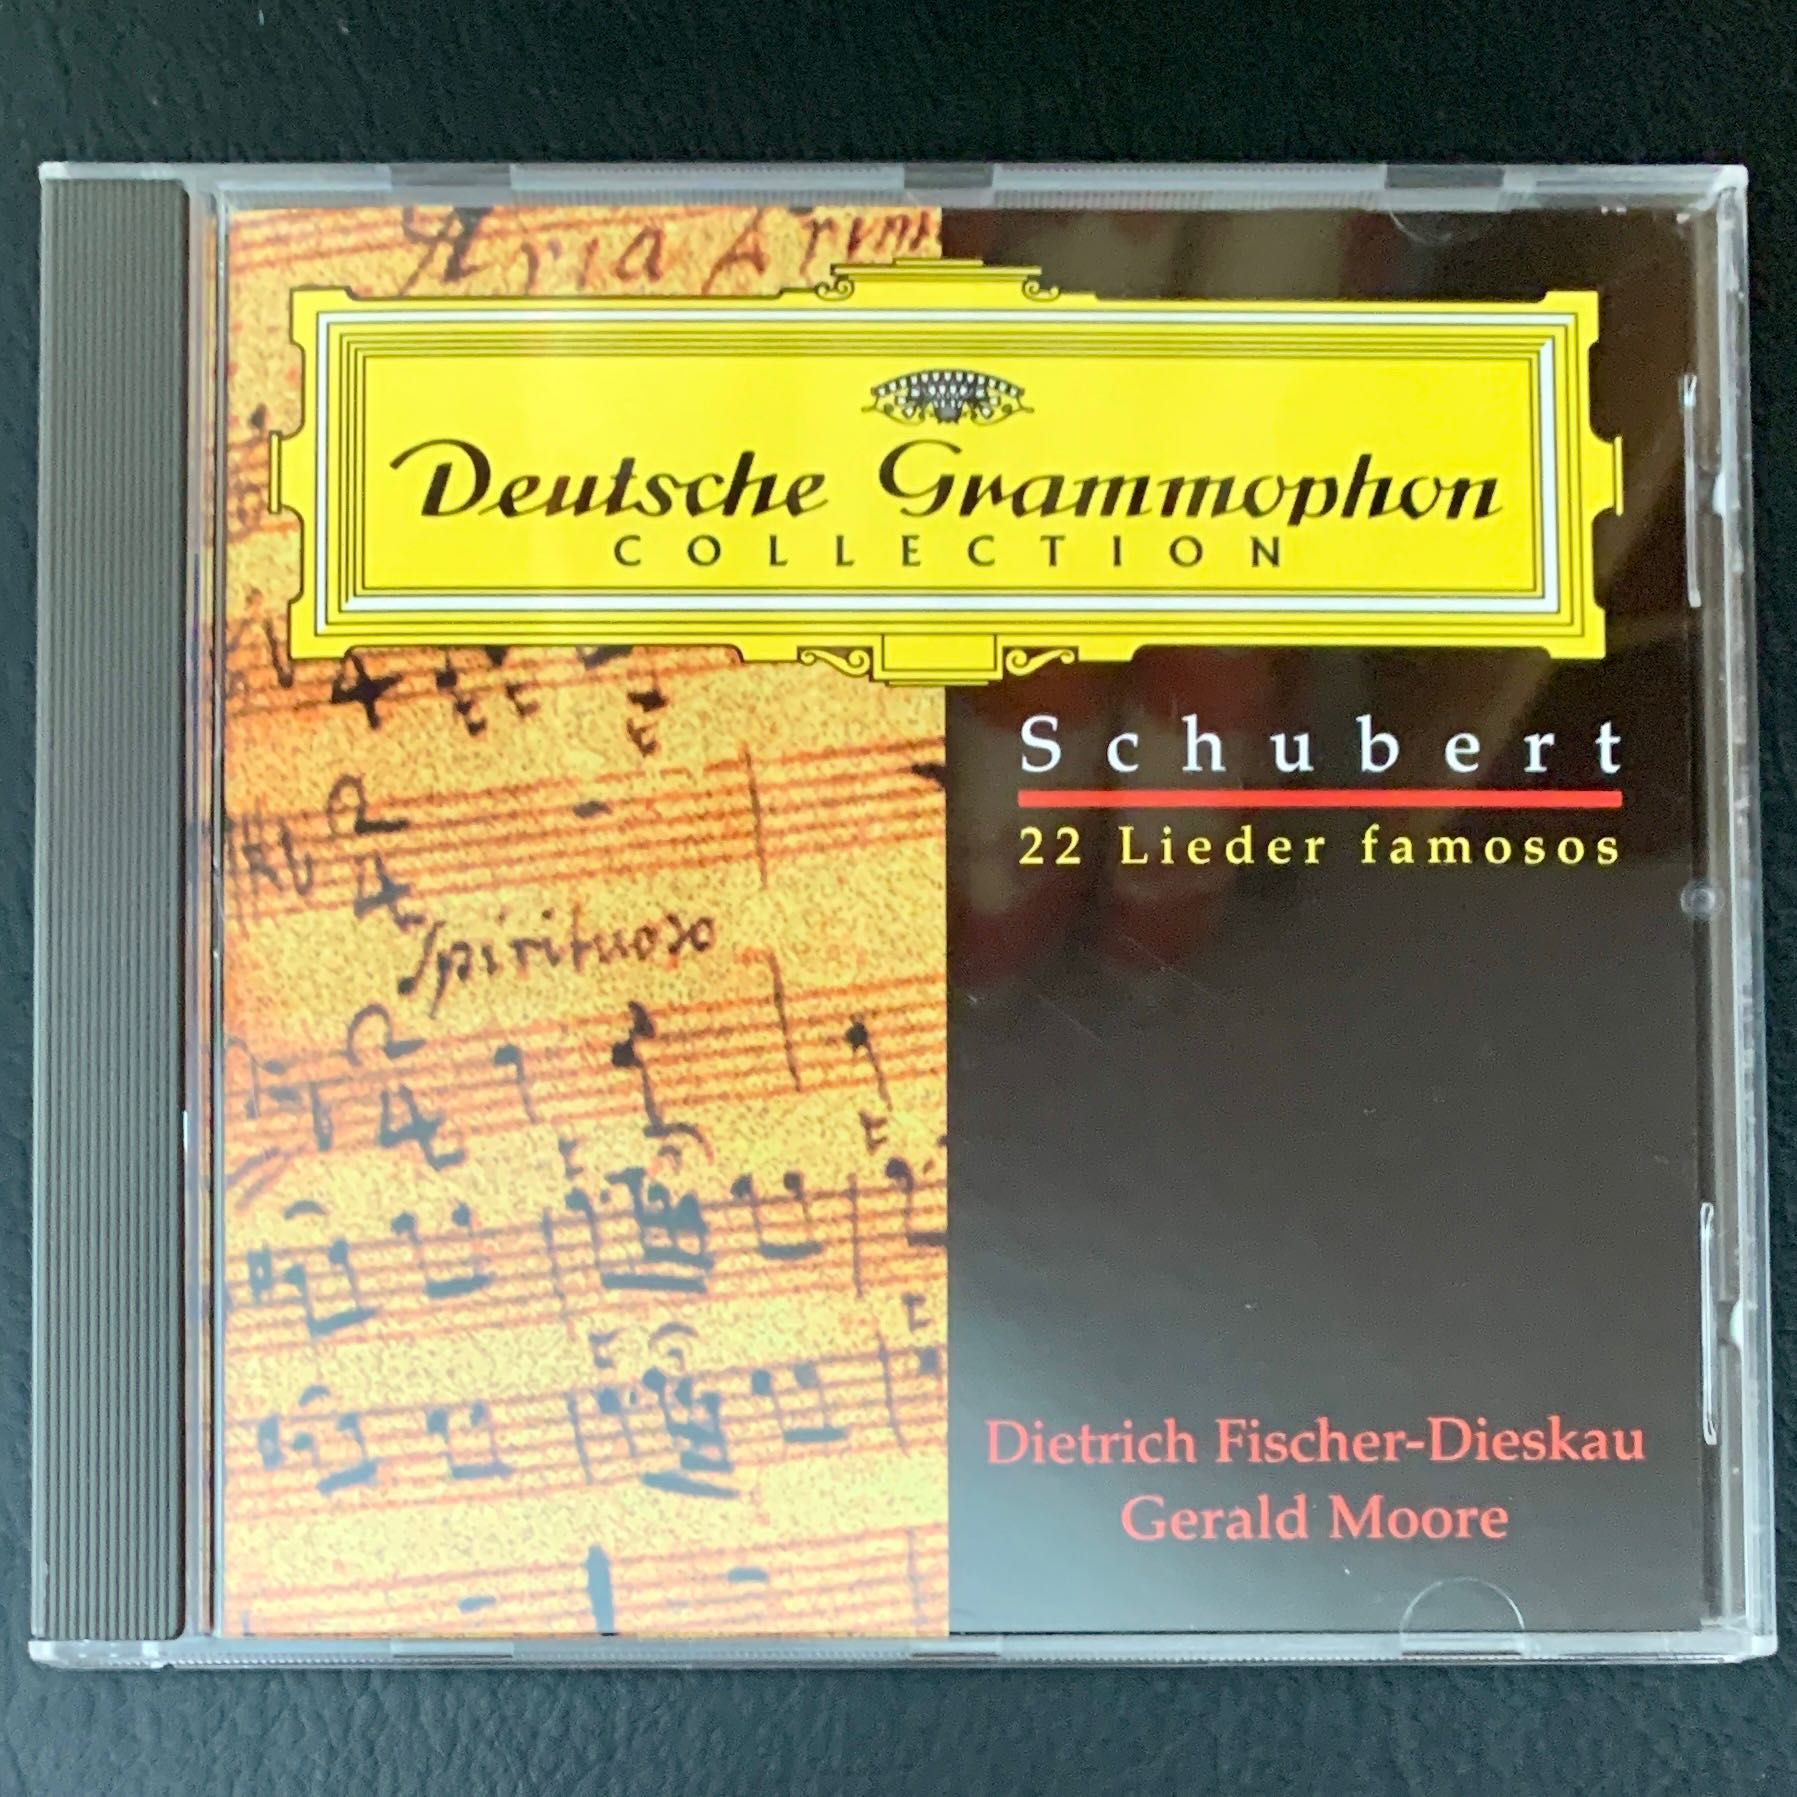 22. Schubert: 22 lieder famosos, CDs música clássica